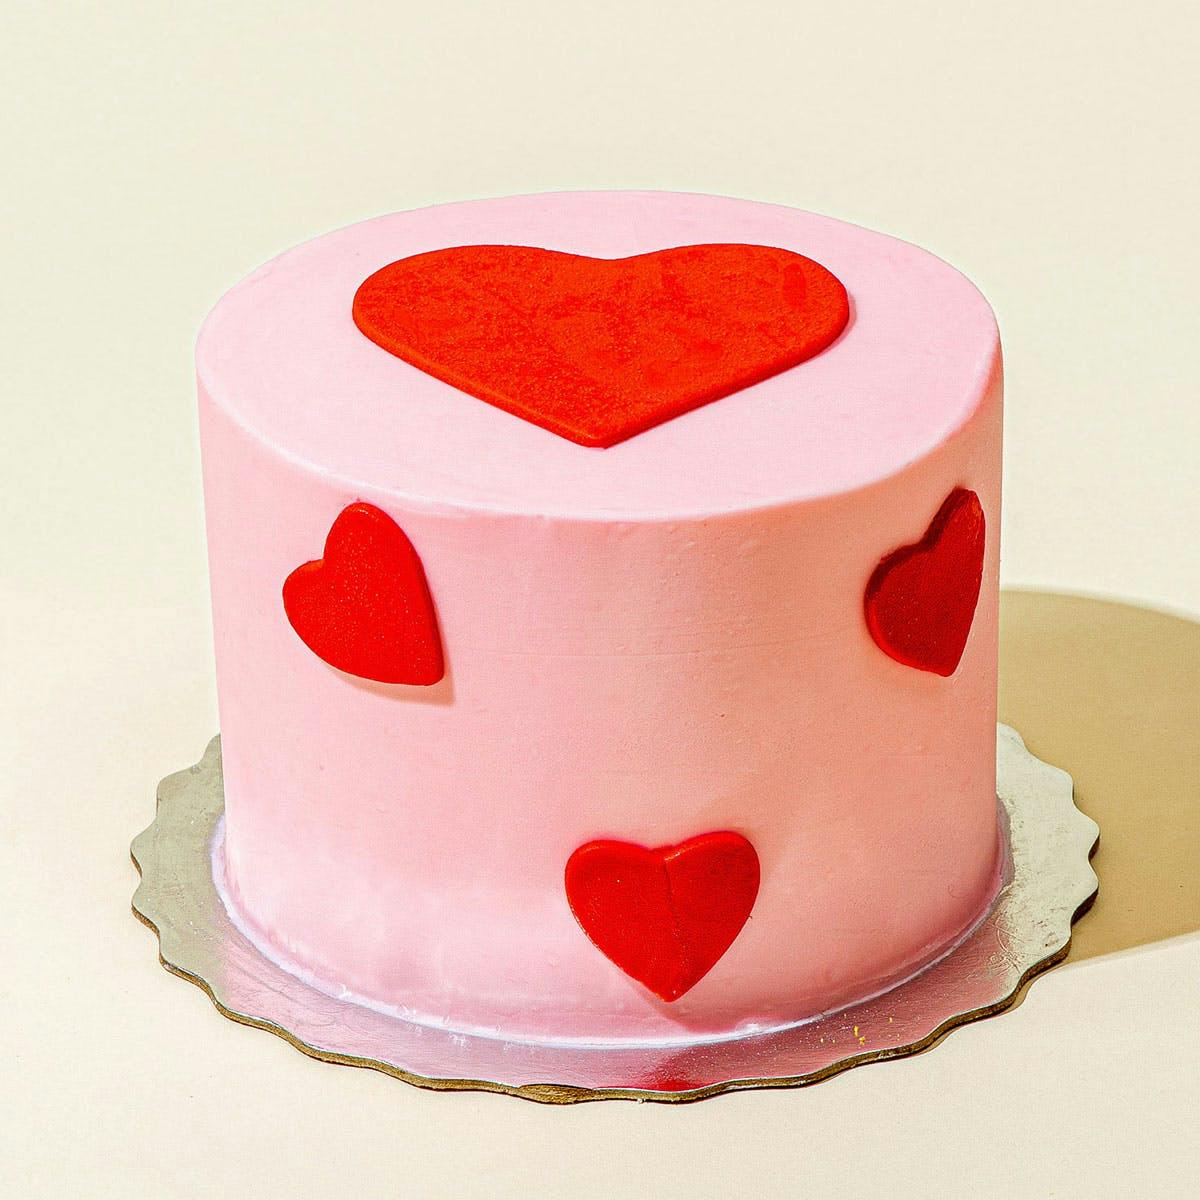 Luscious Red & White Heart Shape Red Velvet Cake